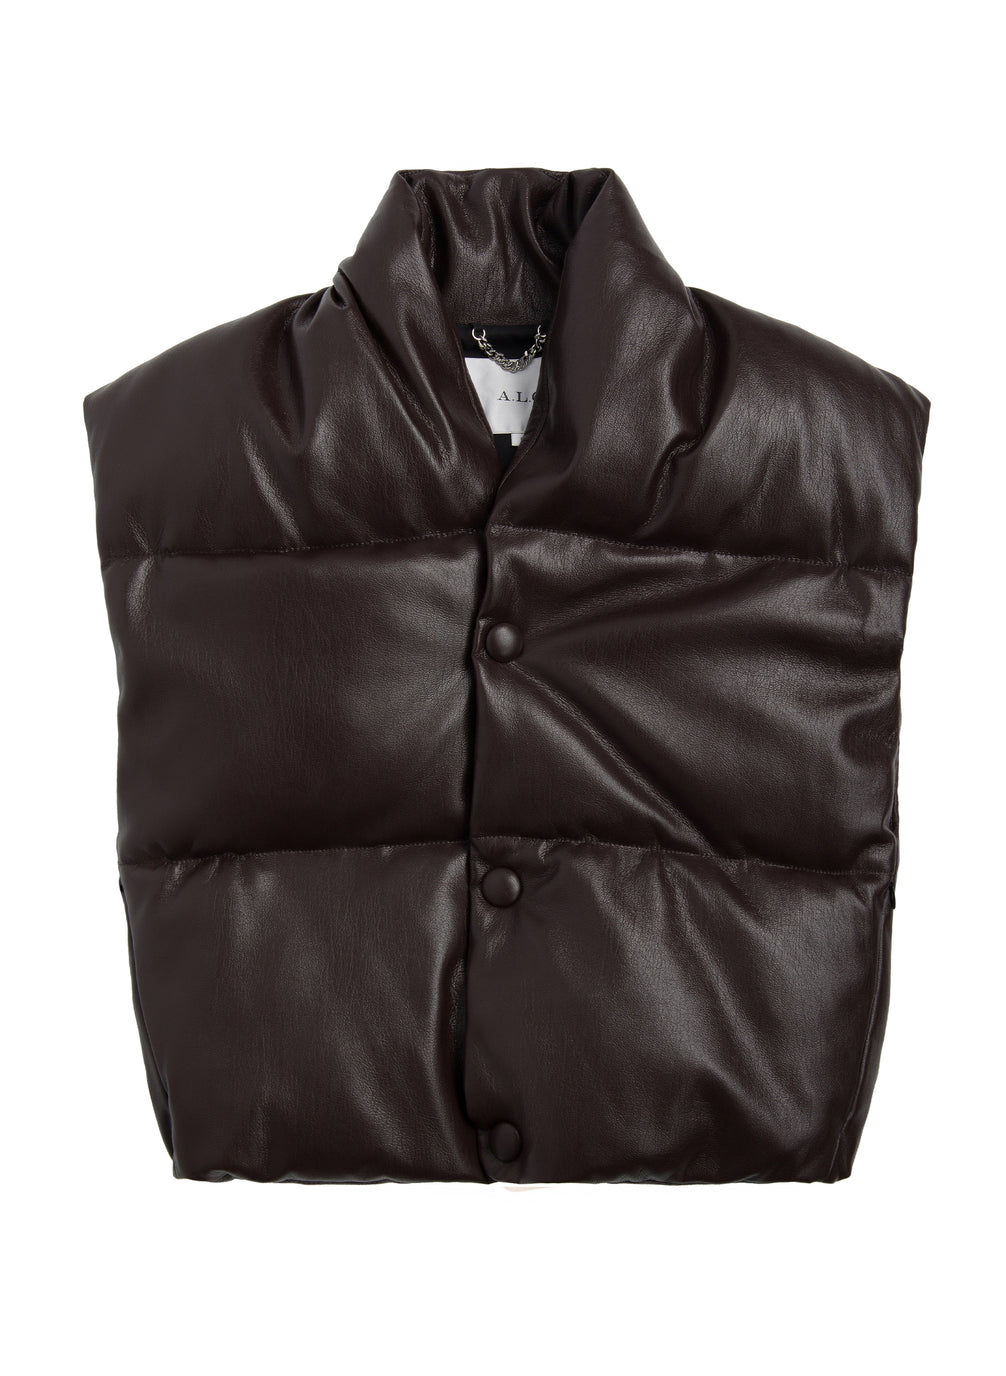 Willow Vegan Leather Vest